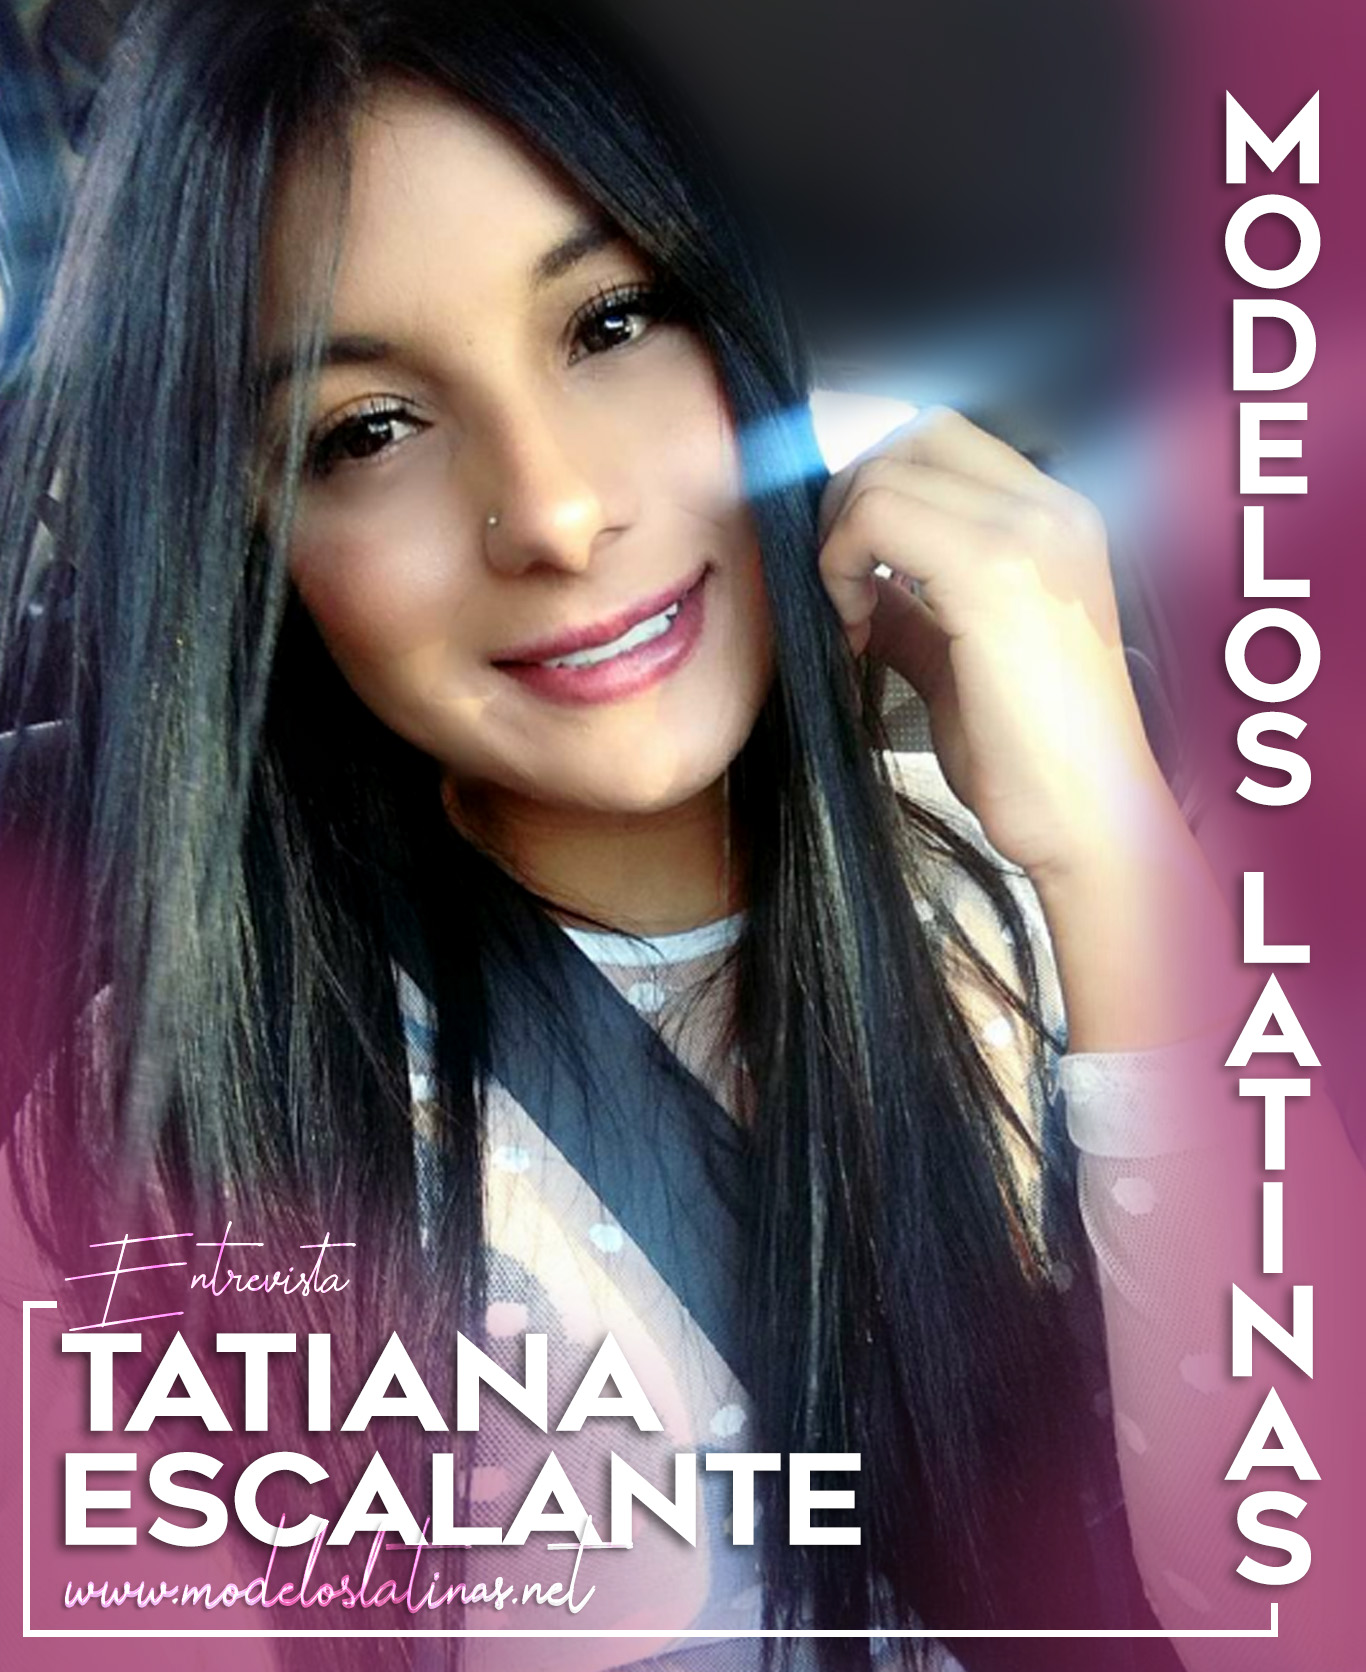 Tatiana Escalante